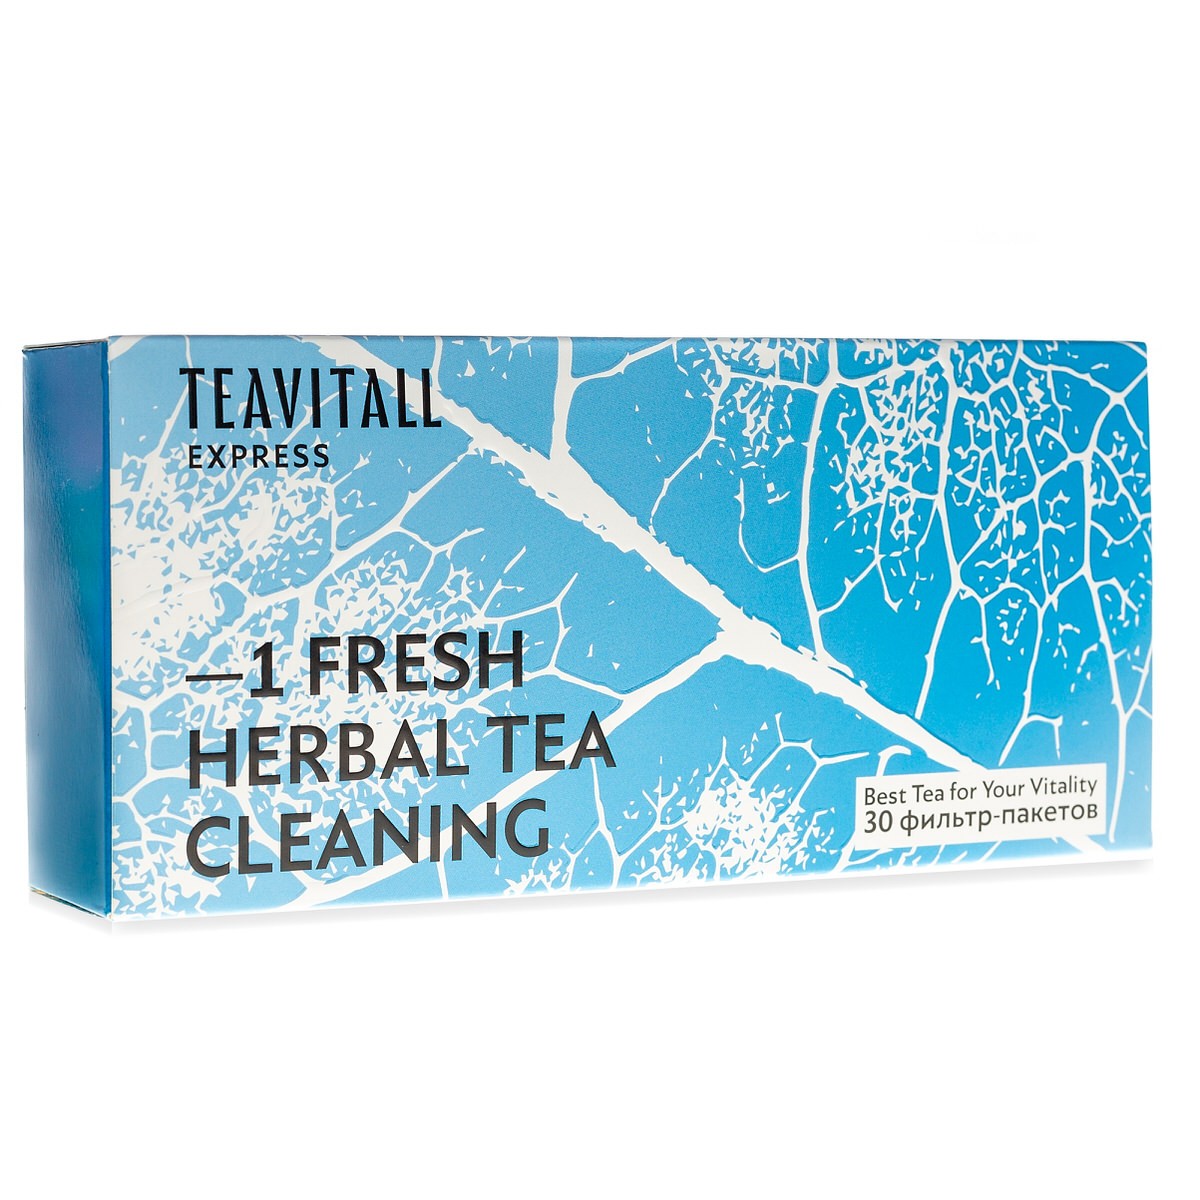 TeaVitall Express Fresh 1, 30 фильтр-пакетов по цене 12.50 руб. - купить в  Слониме ☛ Доставка ☆ Интернет-магазин «EcoGreenDom»